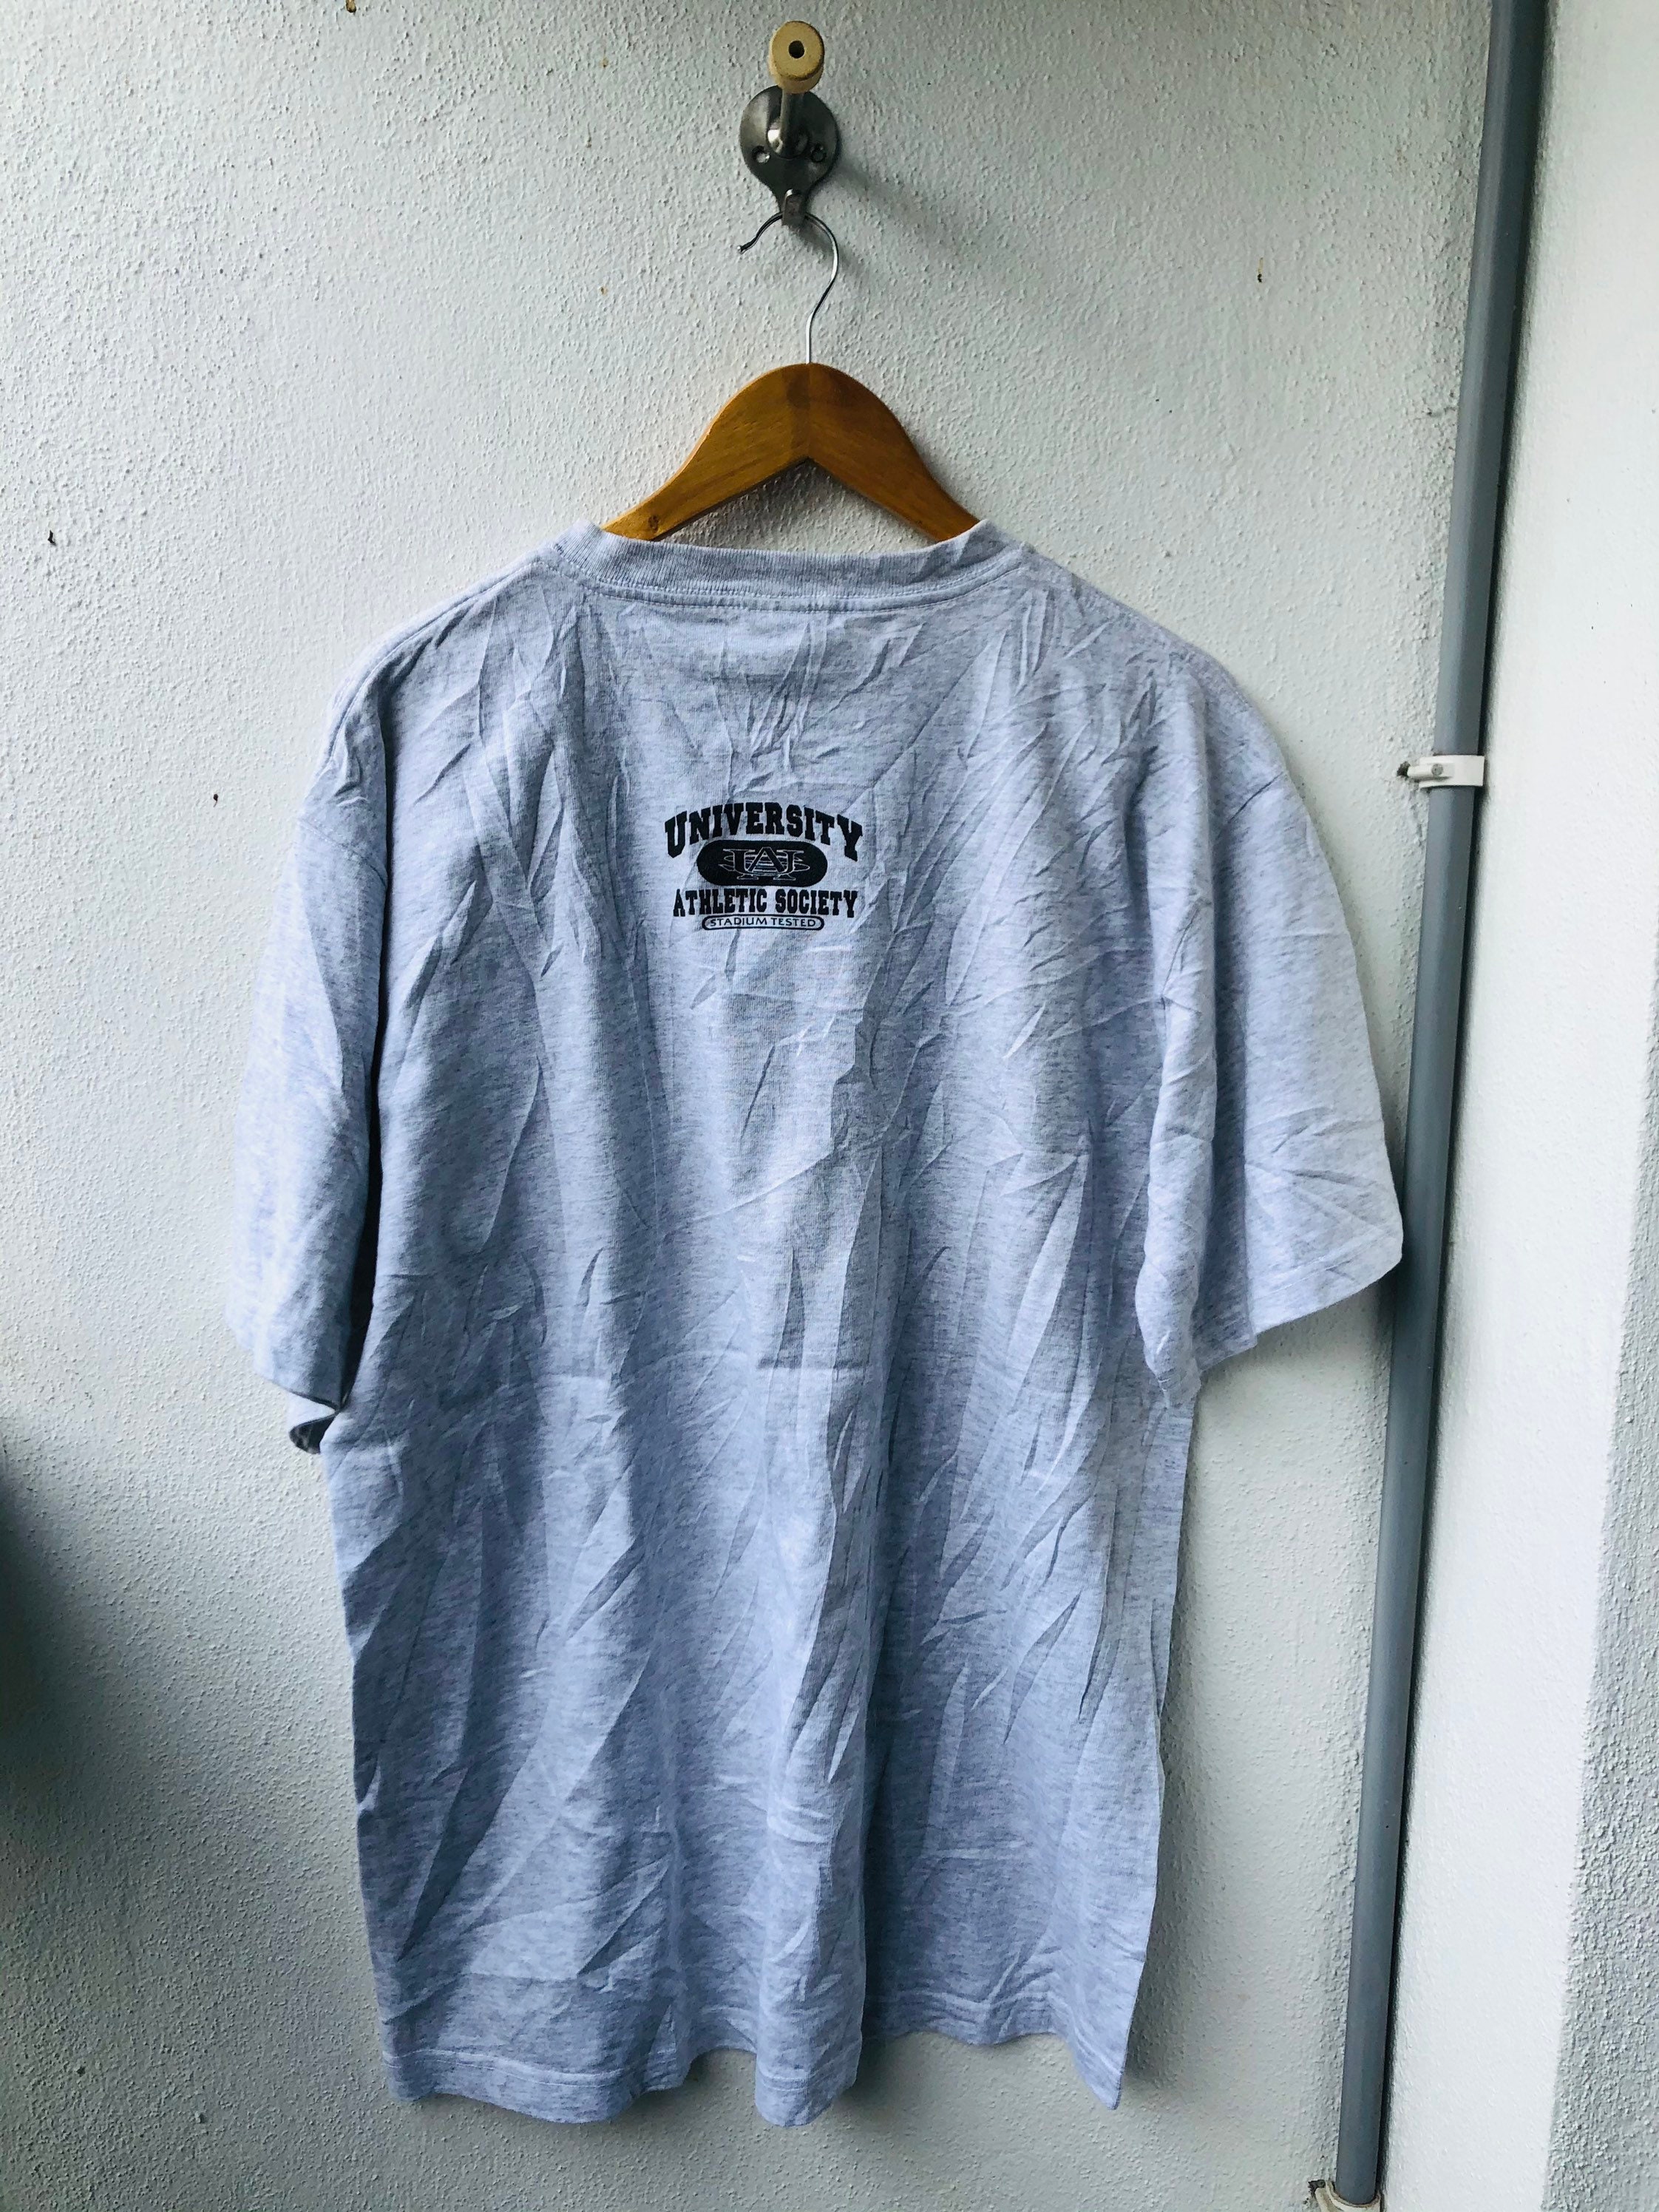 Vintage Original 90s University Athletic Society T-shirt - Etsy